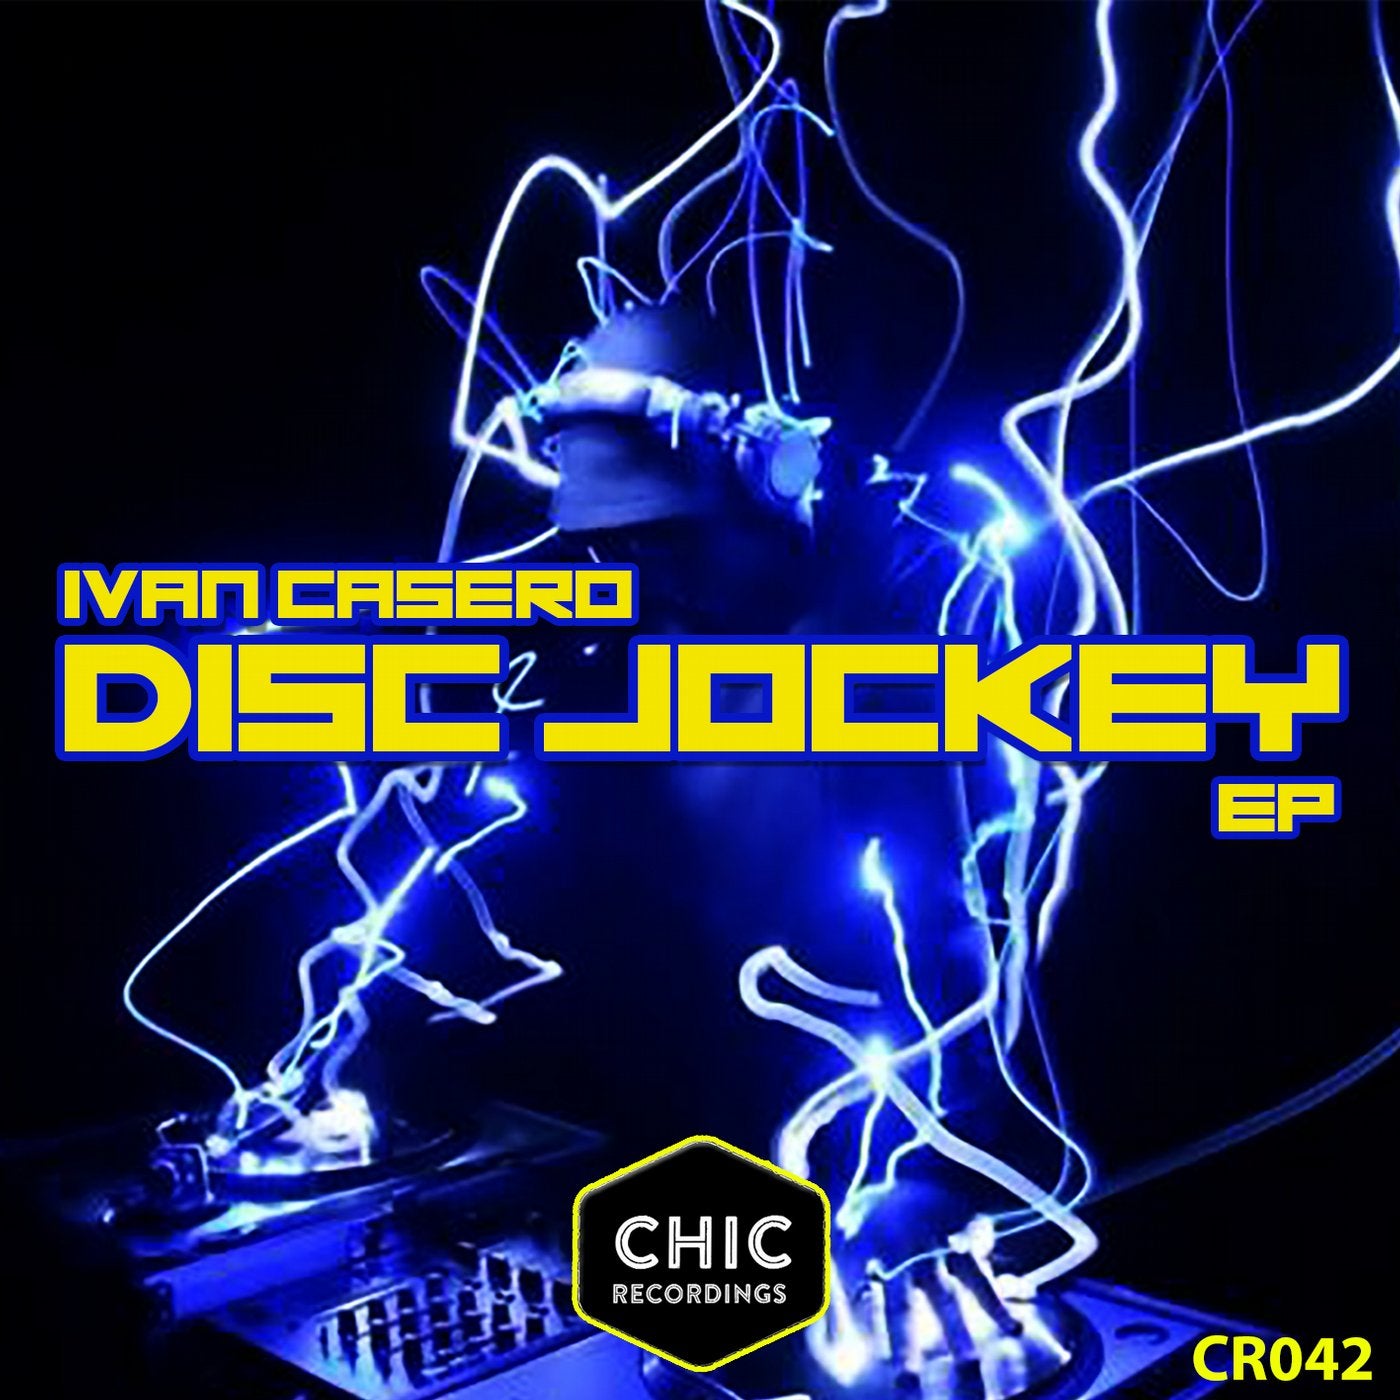 Disc Jockey EP